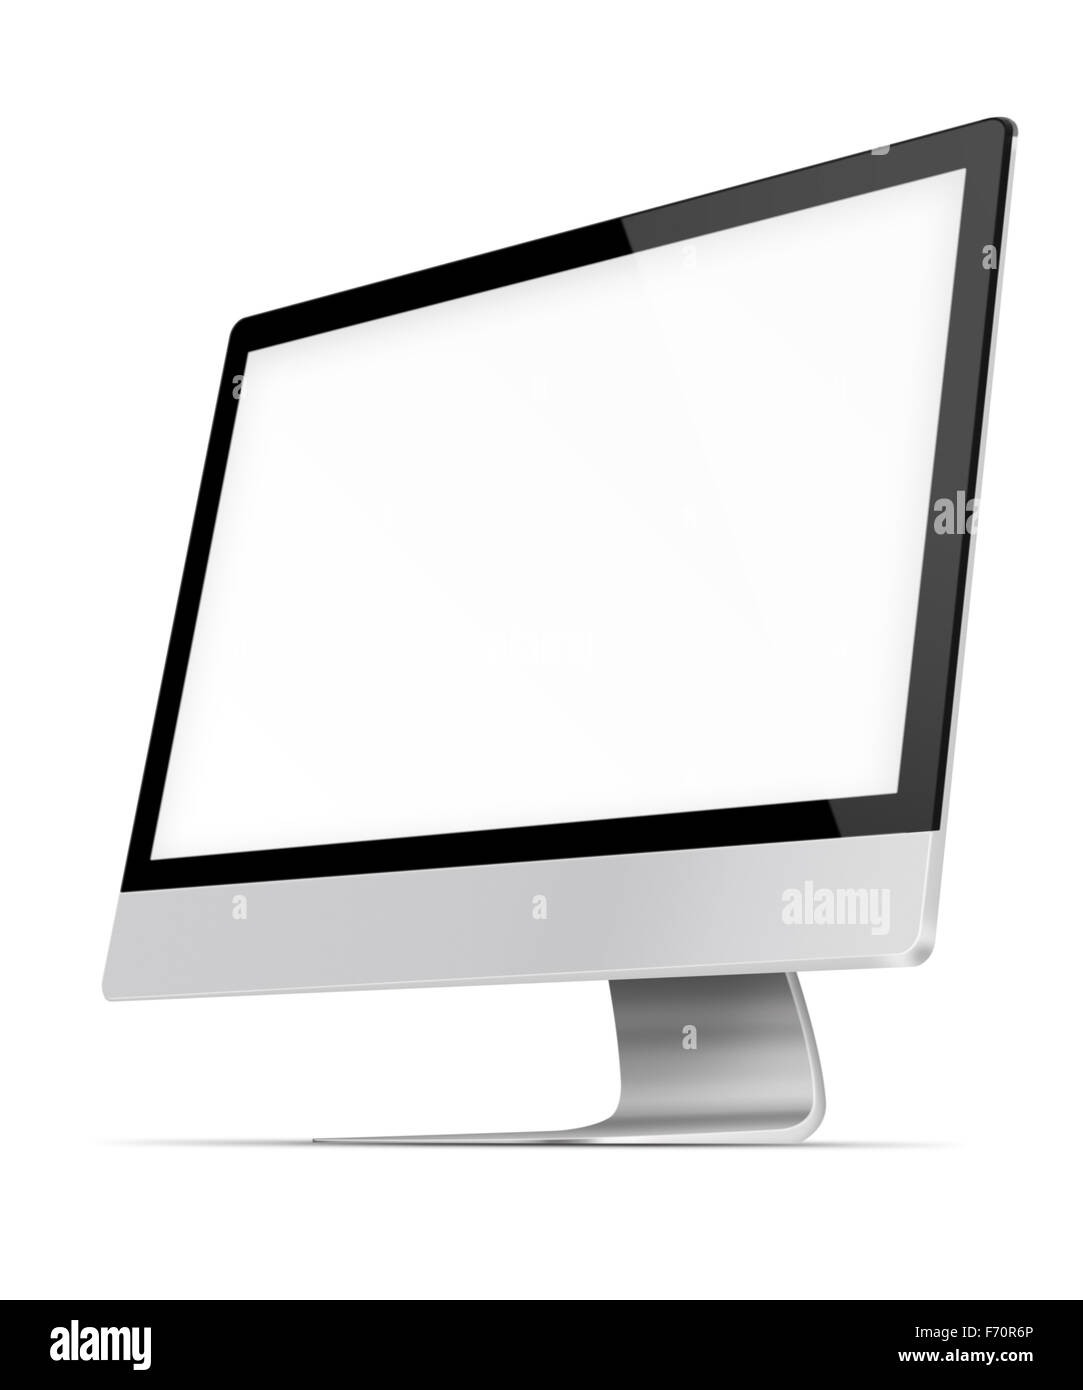 Flachbildschirm Computermonitor mit unbelegten Schirm isoliert auf weißem Hintergrund. Sehr detaillierte Darstellung. Stockfoto